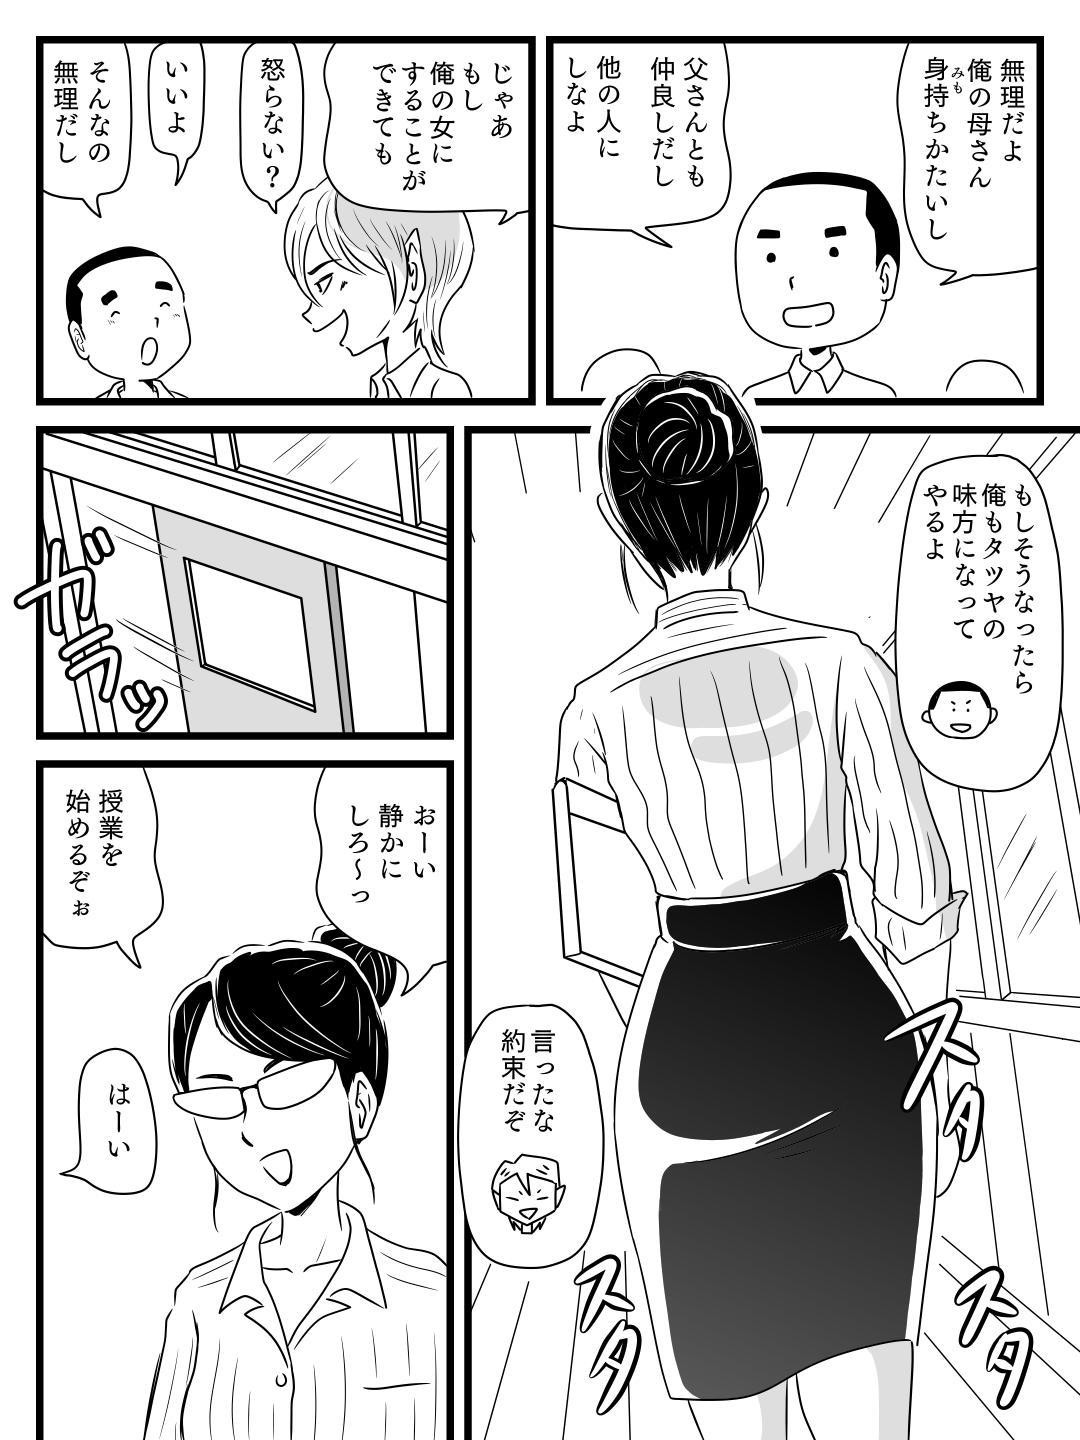 Young Toshiue kira no tomodachi ni kasan o netora reta hanashi - Original Viet Nam - Page 8